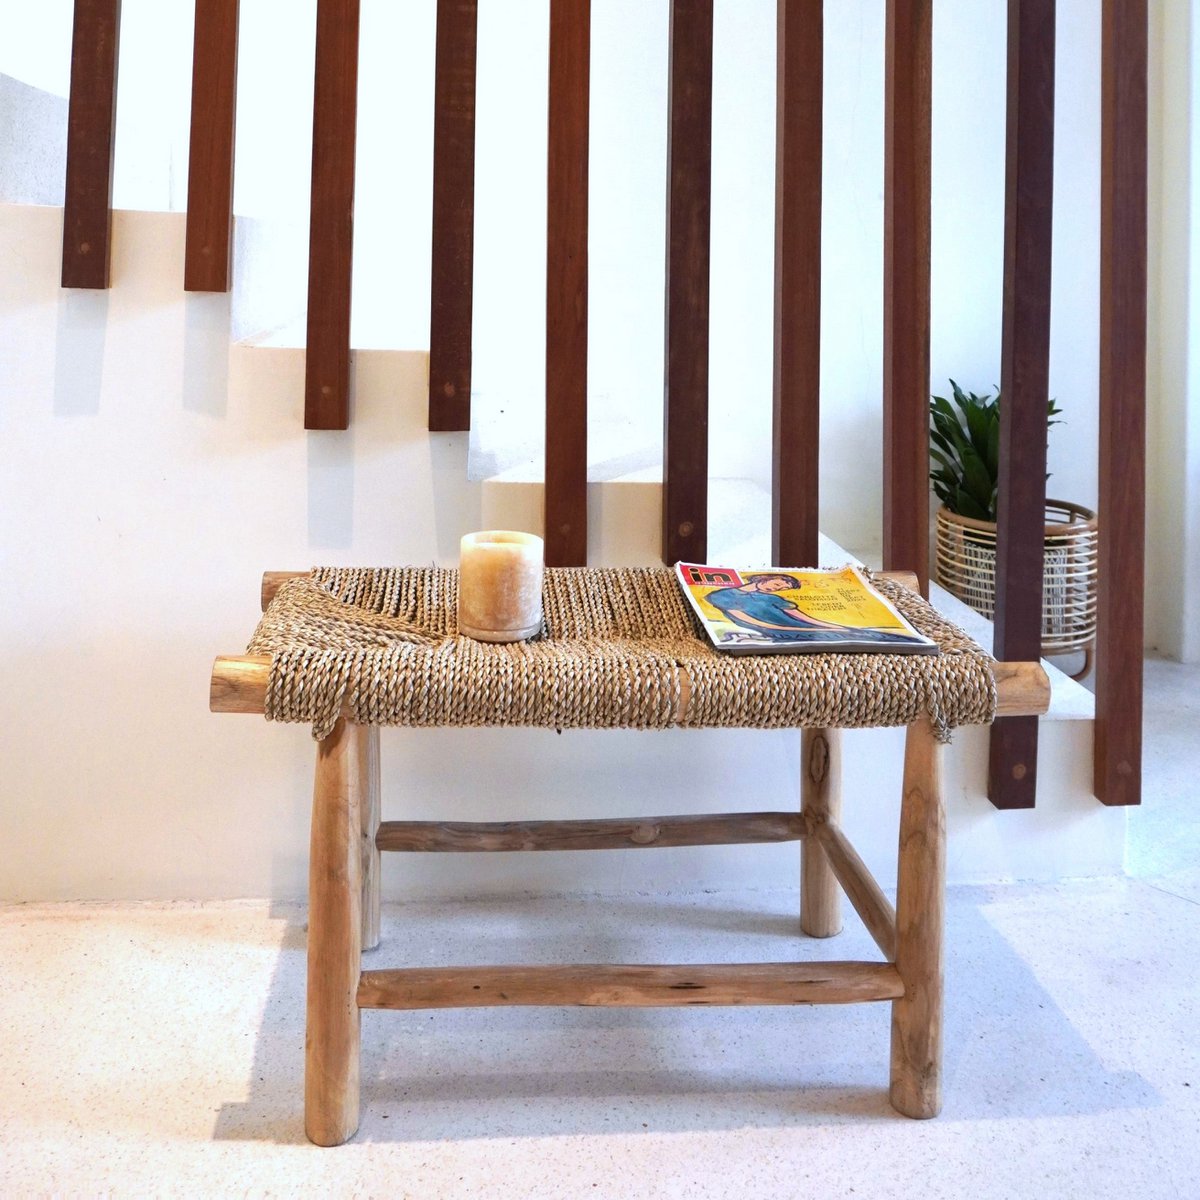 Bank SUNGAI aus massivem Holz mit Sitzfläche aus geflochtenem Seegras